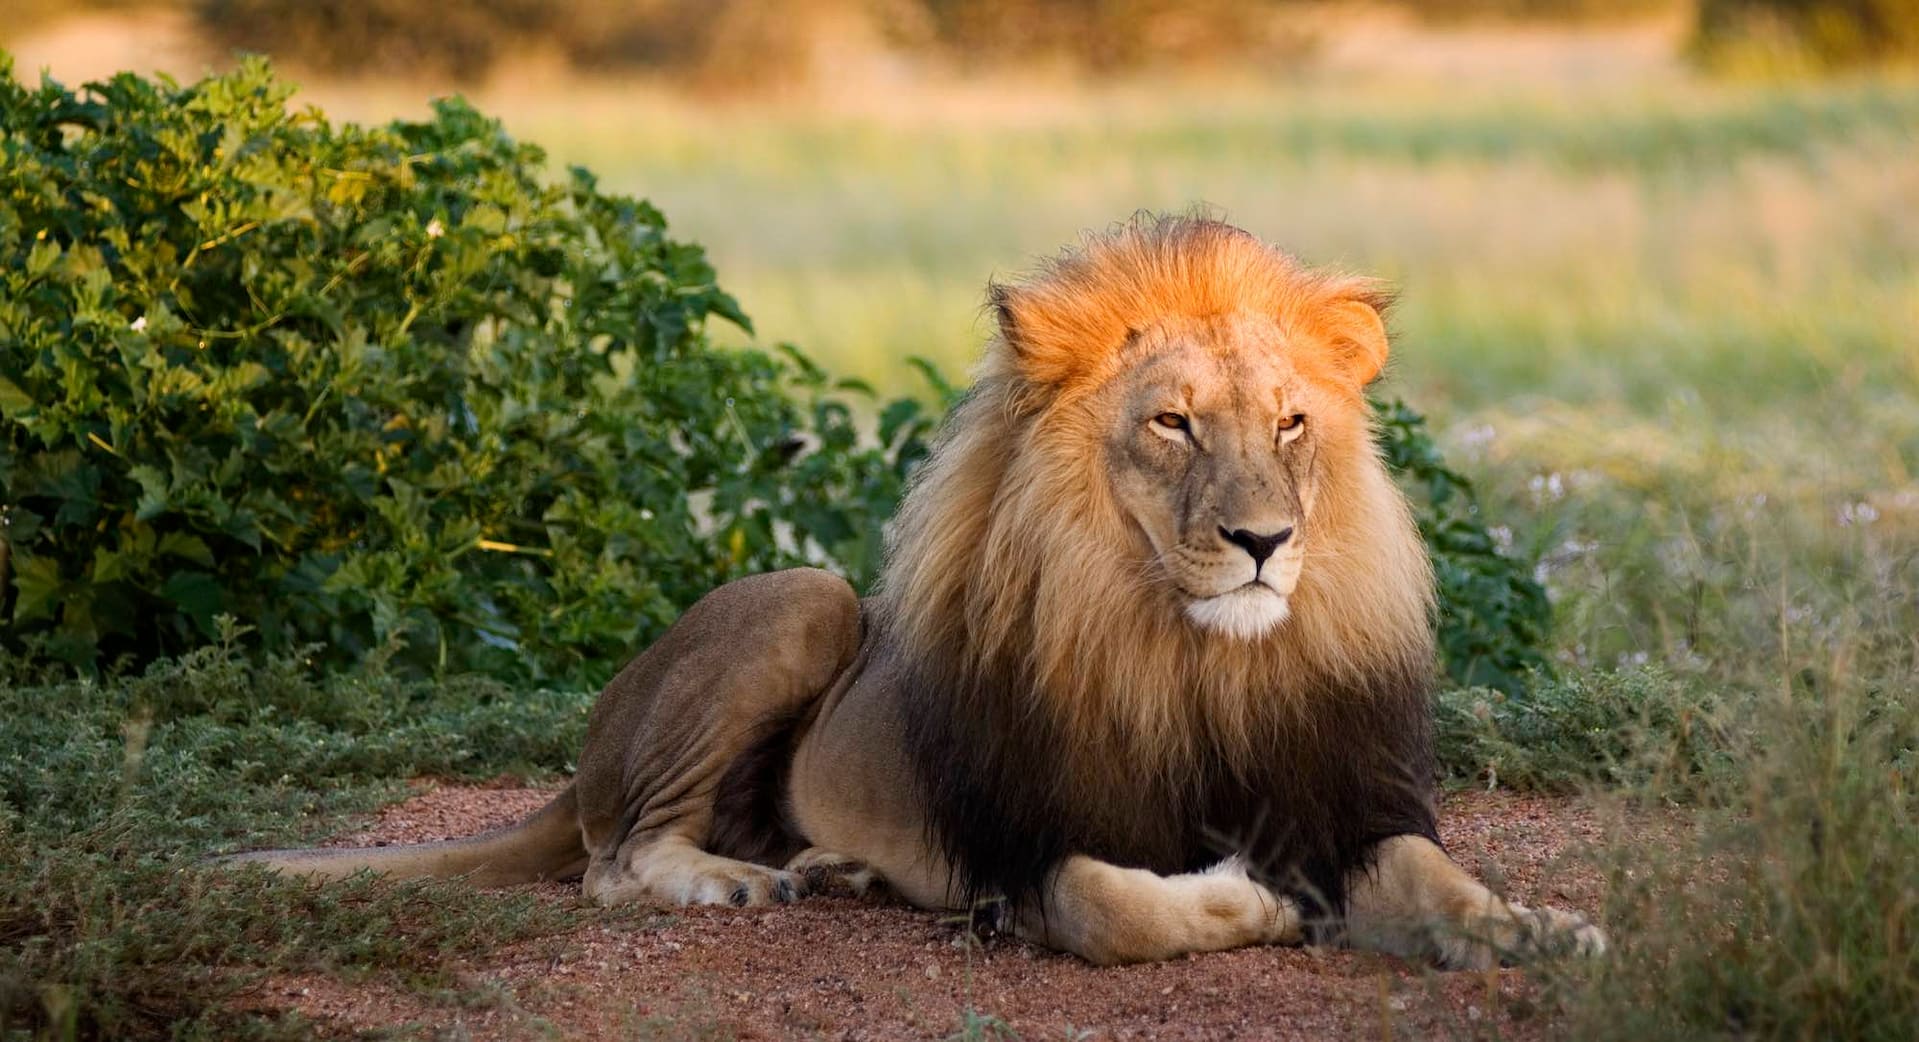 A male lion sitting next to a green bush.